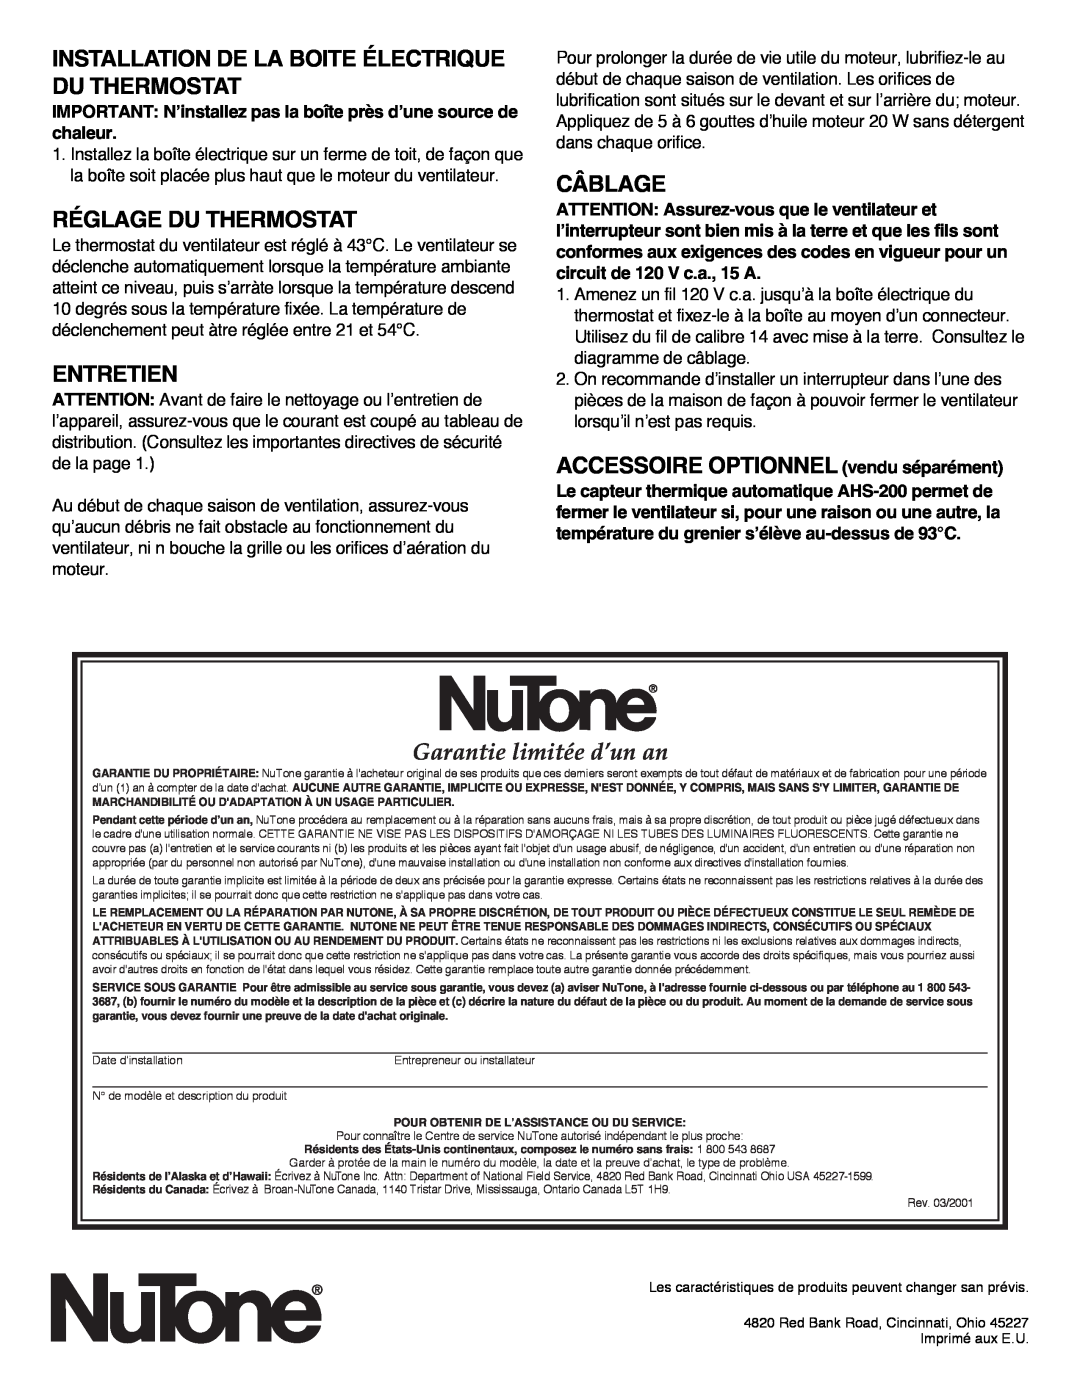 NuTone RF-49NR Garantie limitée d’un an, Installation De La Boite Électrique Du Thermostat, Réglage Du Thermostat, Câblage 